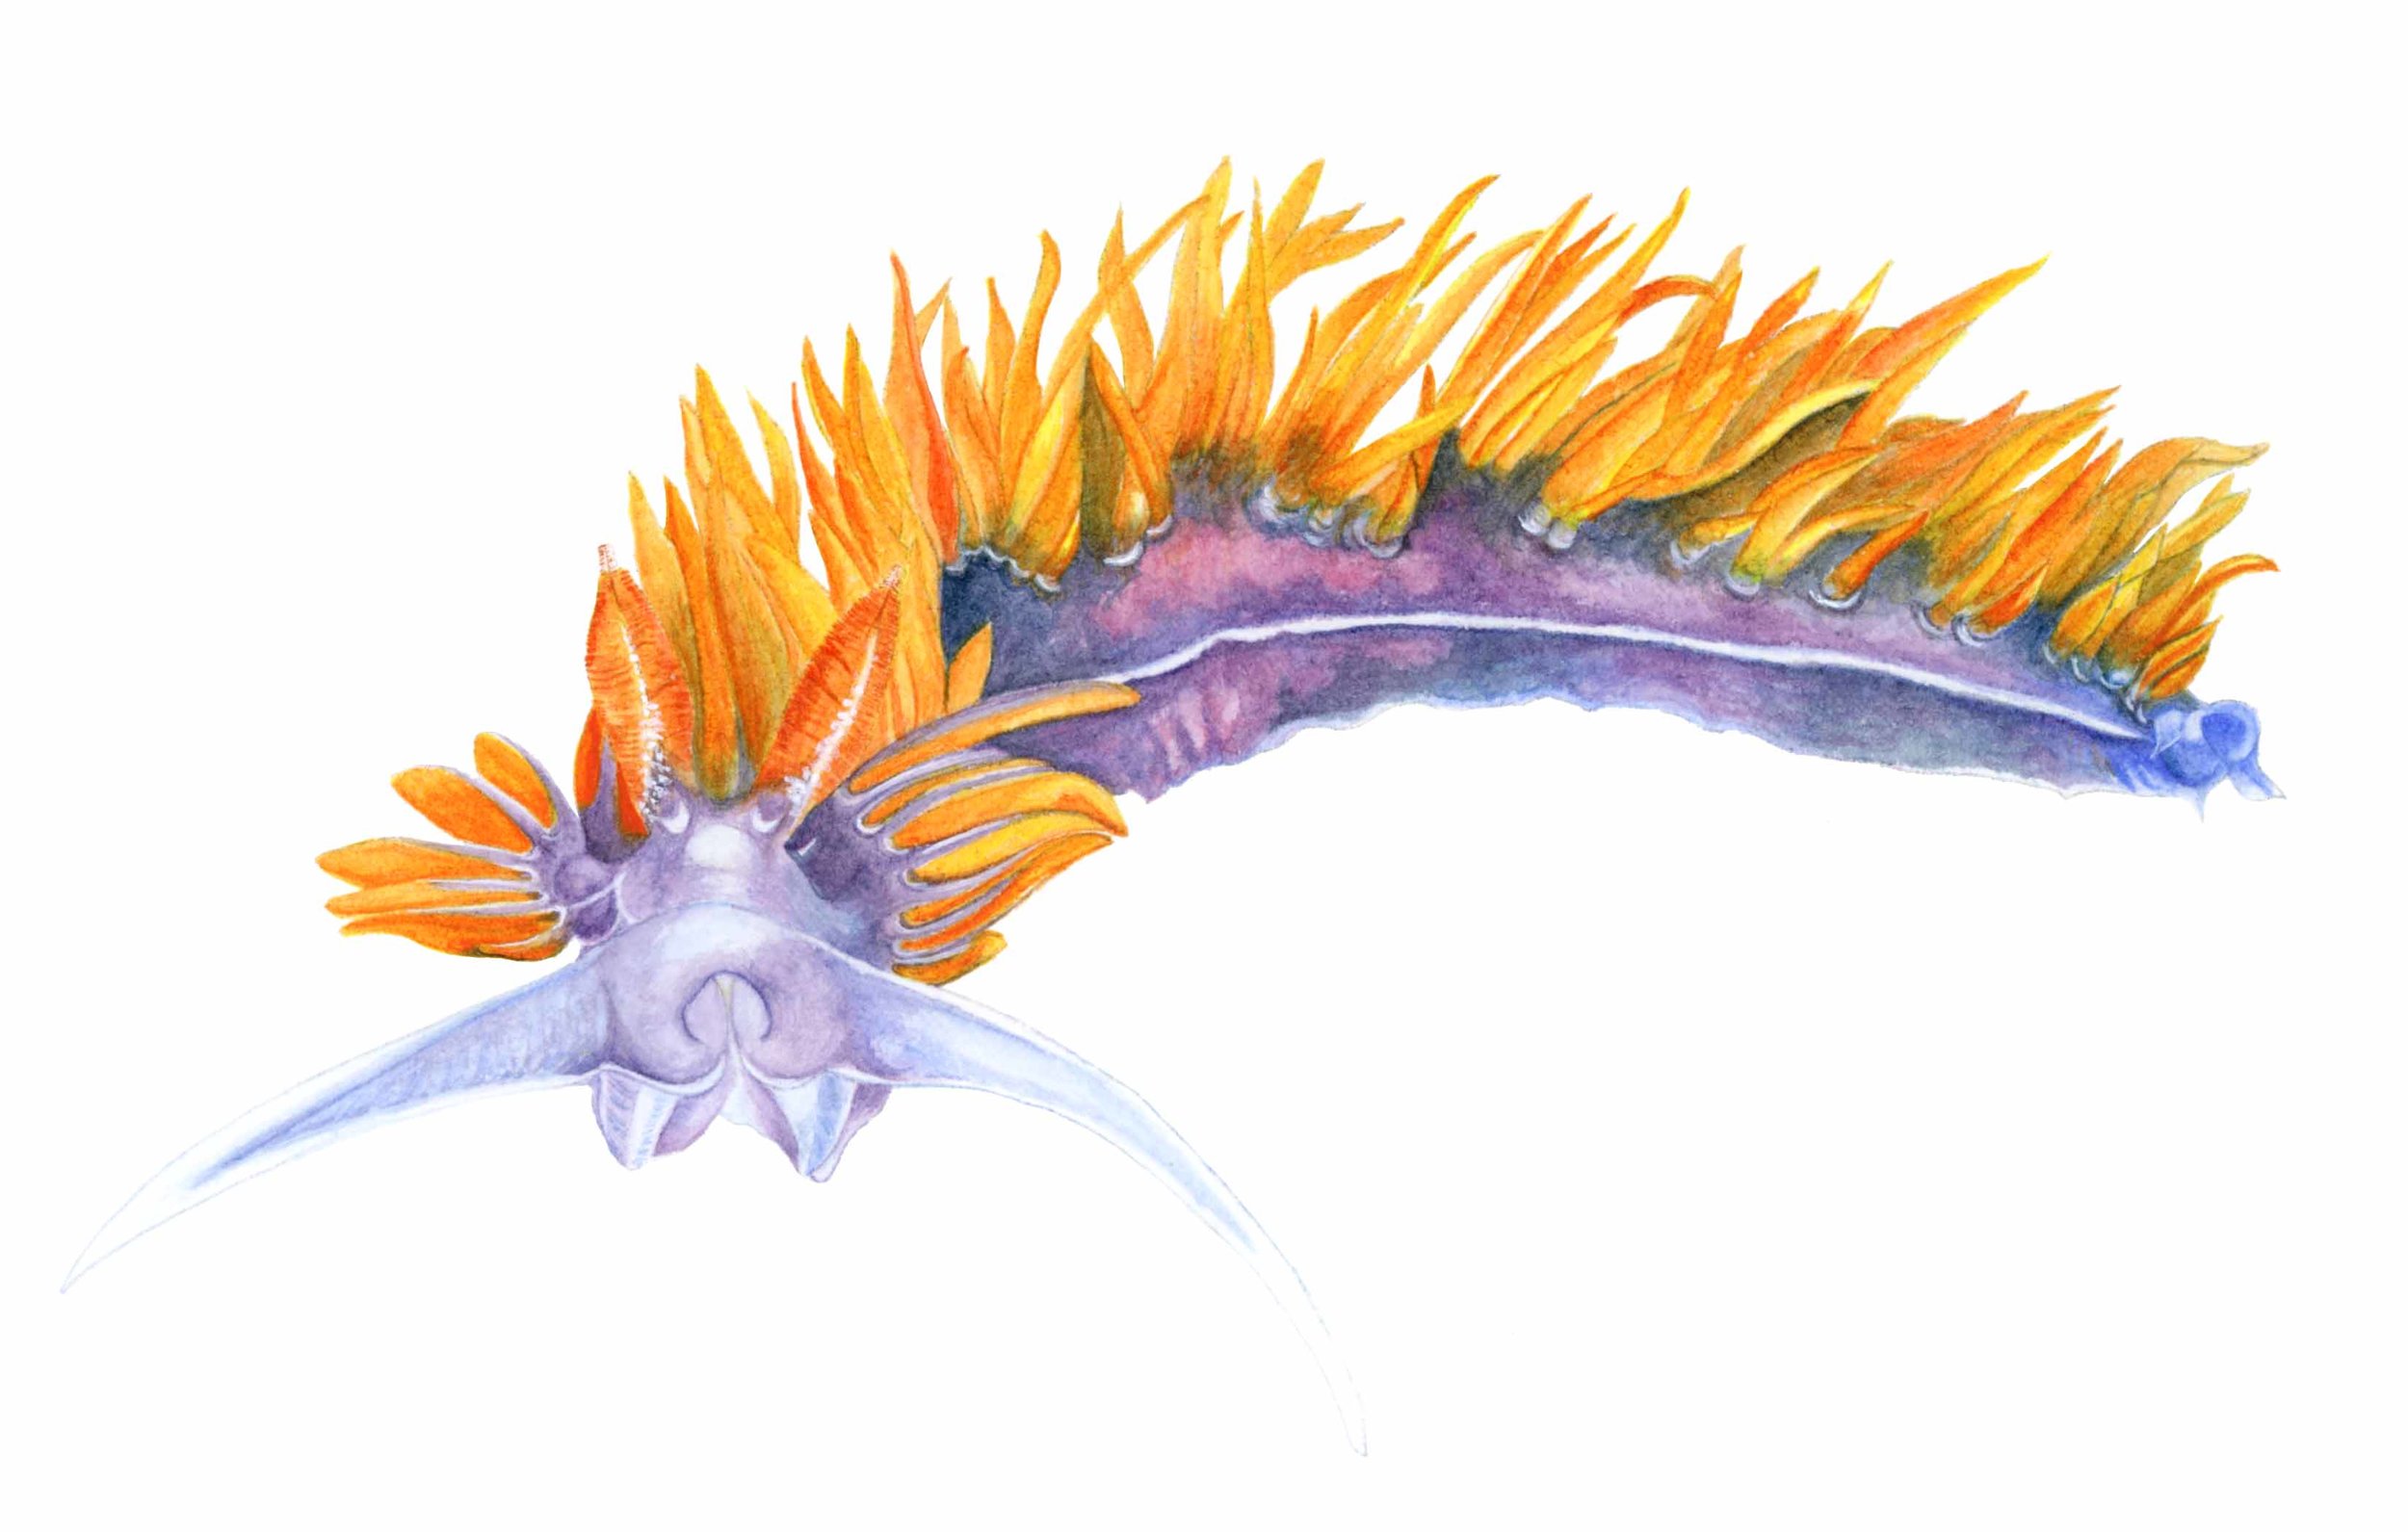    Flabellina iodinea , sea slug   Watercolour. ©Sylvia Heredia , 2016 